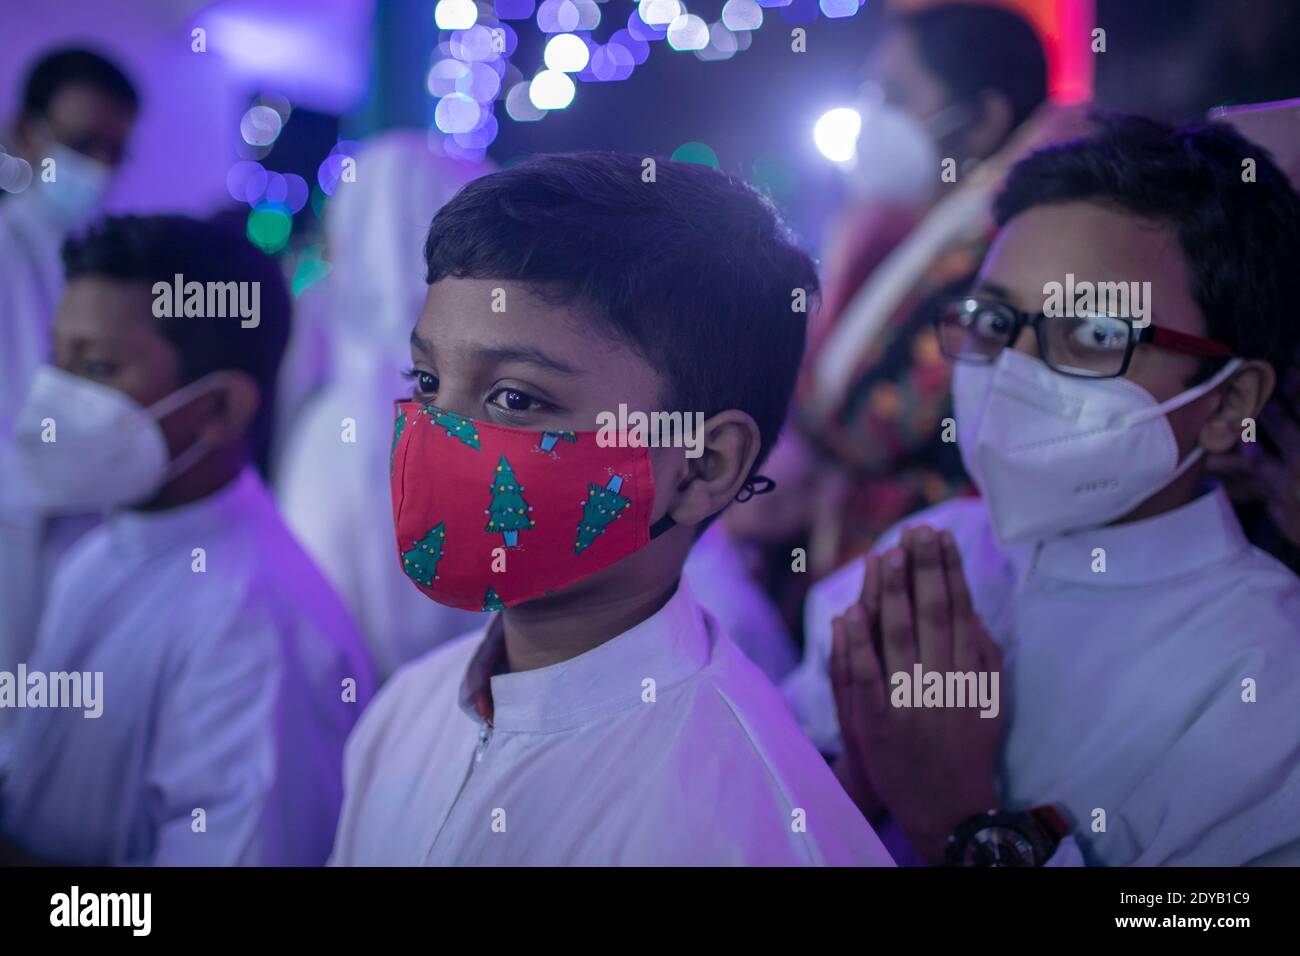 Kinder tragen Masken besuchen Gebete in einer heiligen Rosenkranz katholischen Kirche während Heiligabend.Bangladesch feiert Weihnachten, den Geburtstag von Jesus Christus, Aber aufgrund der Covid-19-Pandemie in diesem Jahr wird der Tag in begrenztem Umfang gefeiert werden, wobei die Regeln für die Gesundheit eingehalten werden, einschließlich der Aufrechterhaltung der sozialen Distanzierung und das Tragen von Masken überall. Stockfoto